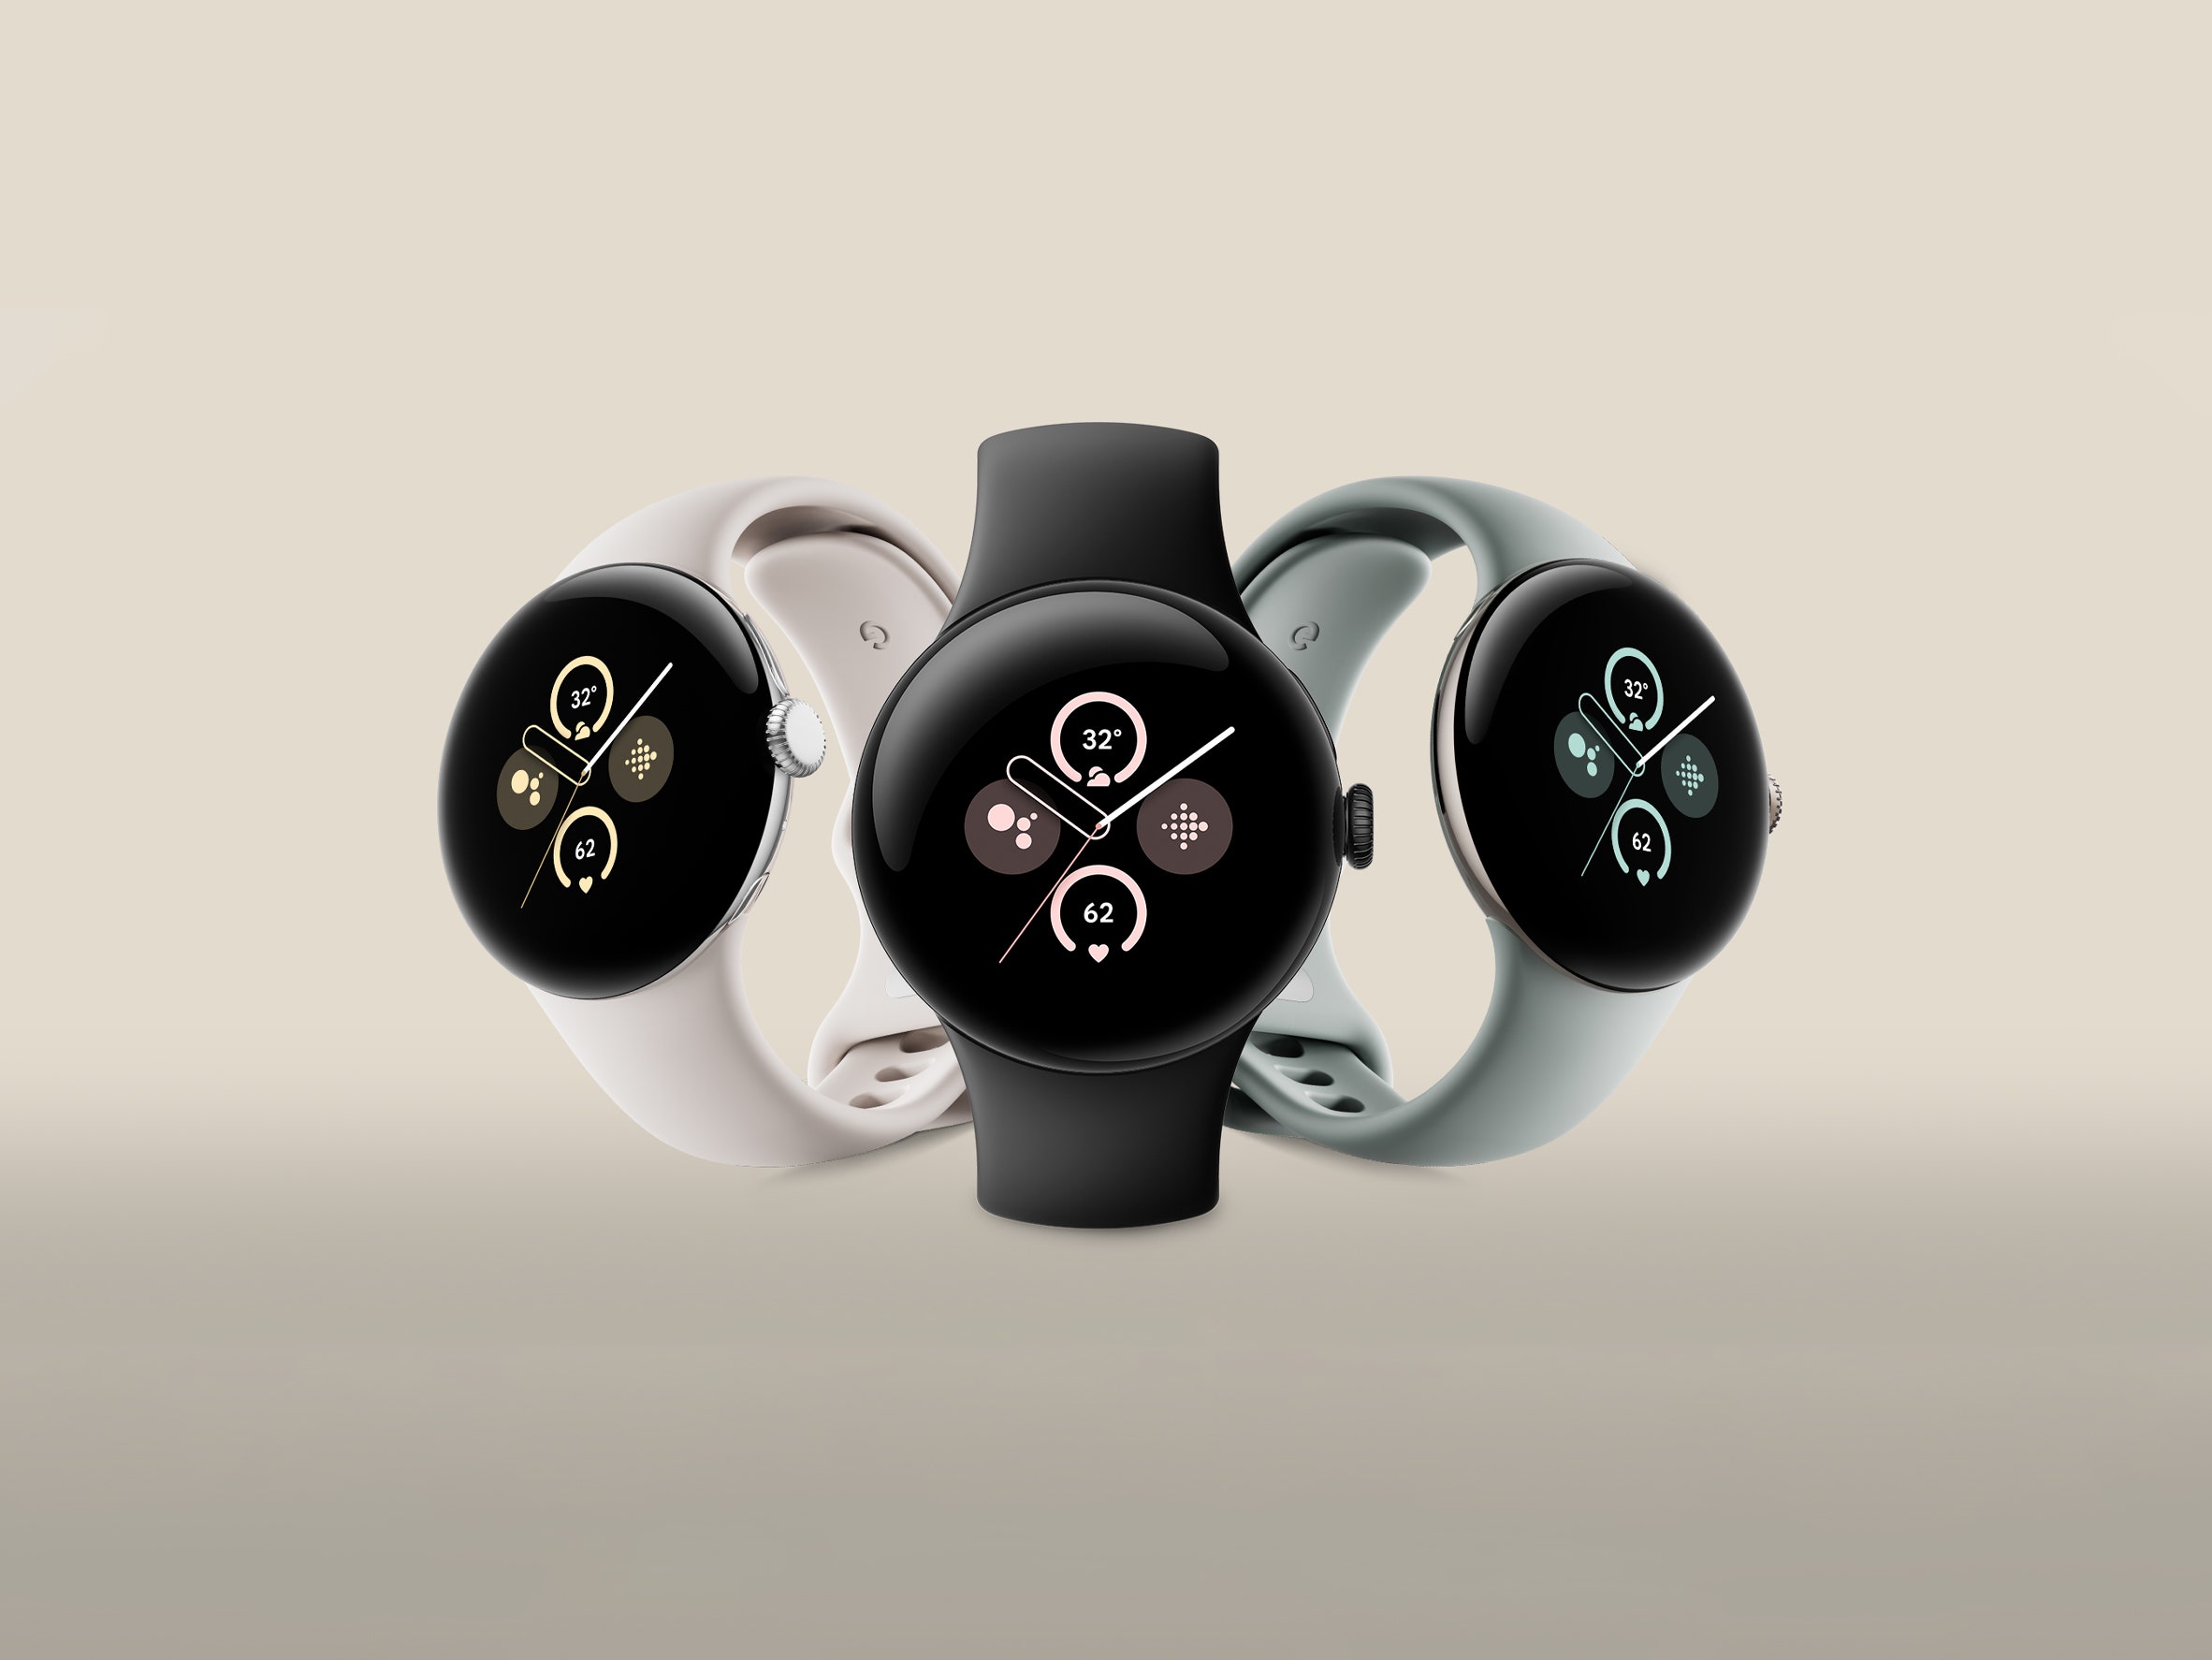 Oryginalny zegarek Pixel Watch z aktualizacją oprogramowania otrzymał nowe funkcje, podobnie jak Pixel Watch 2